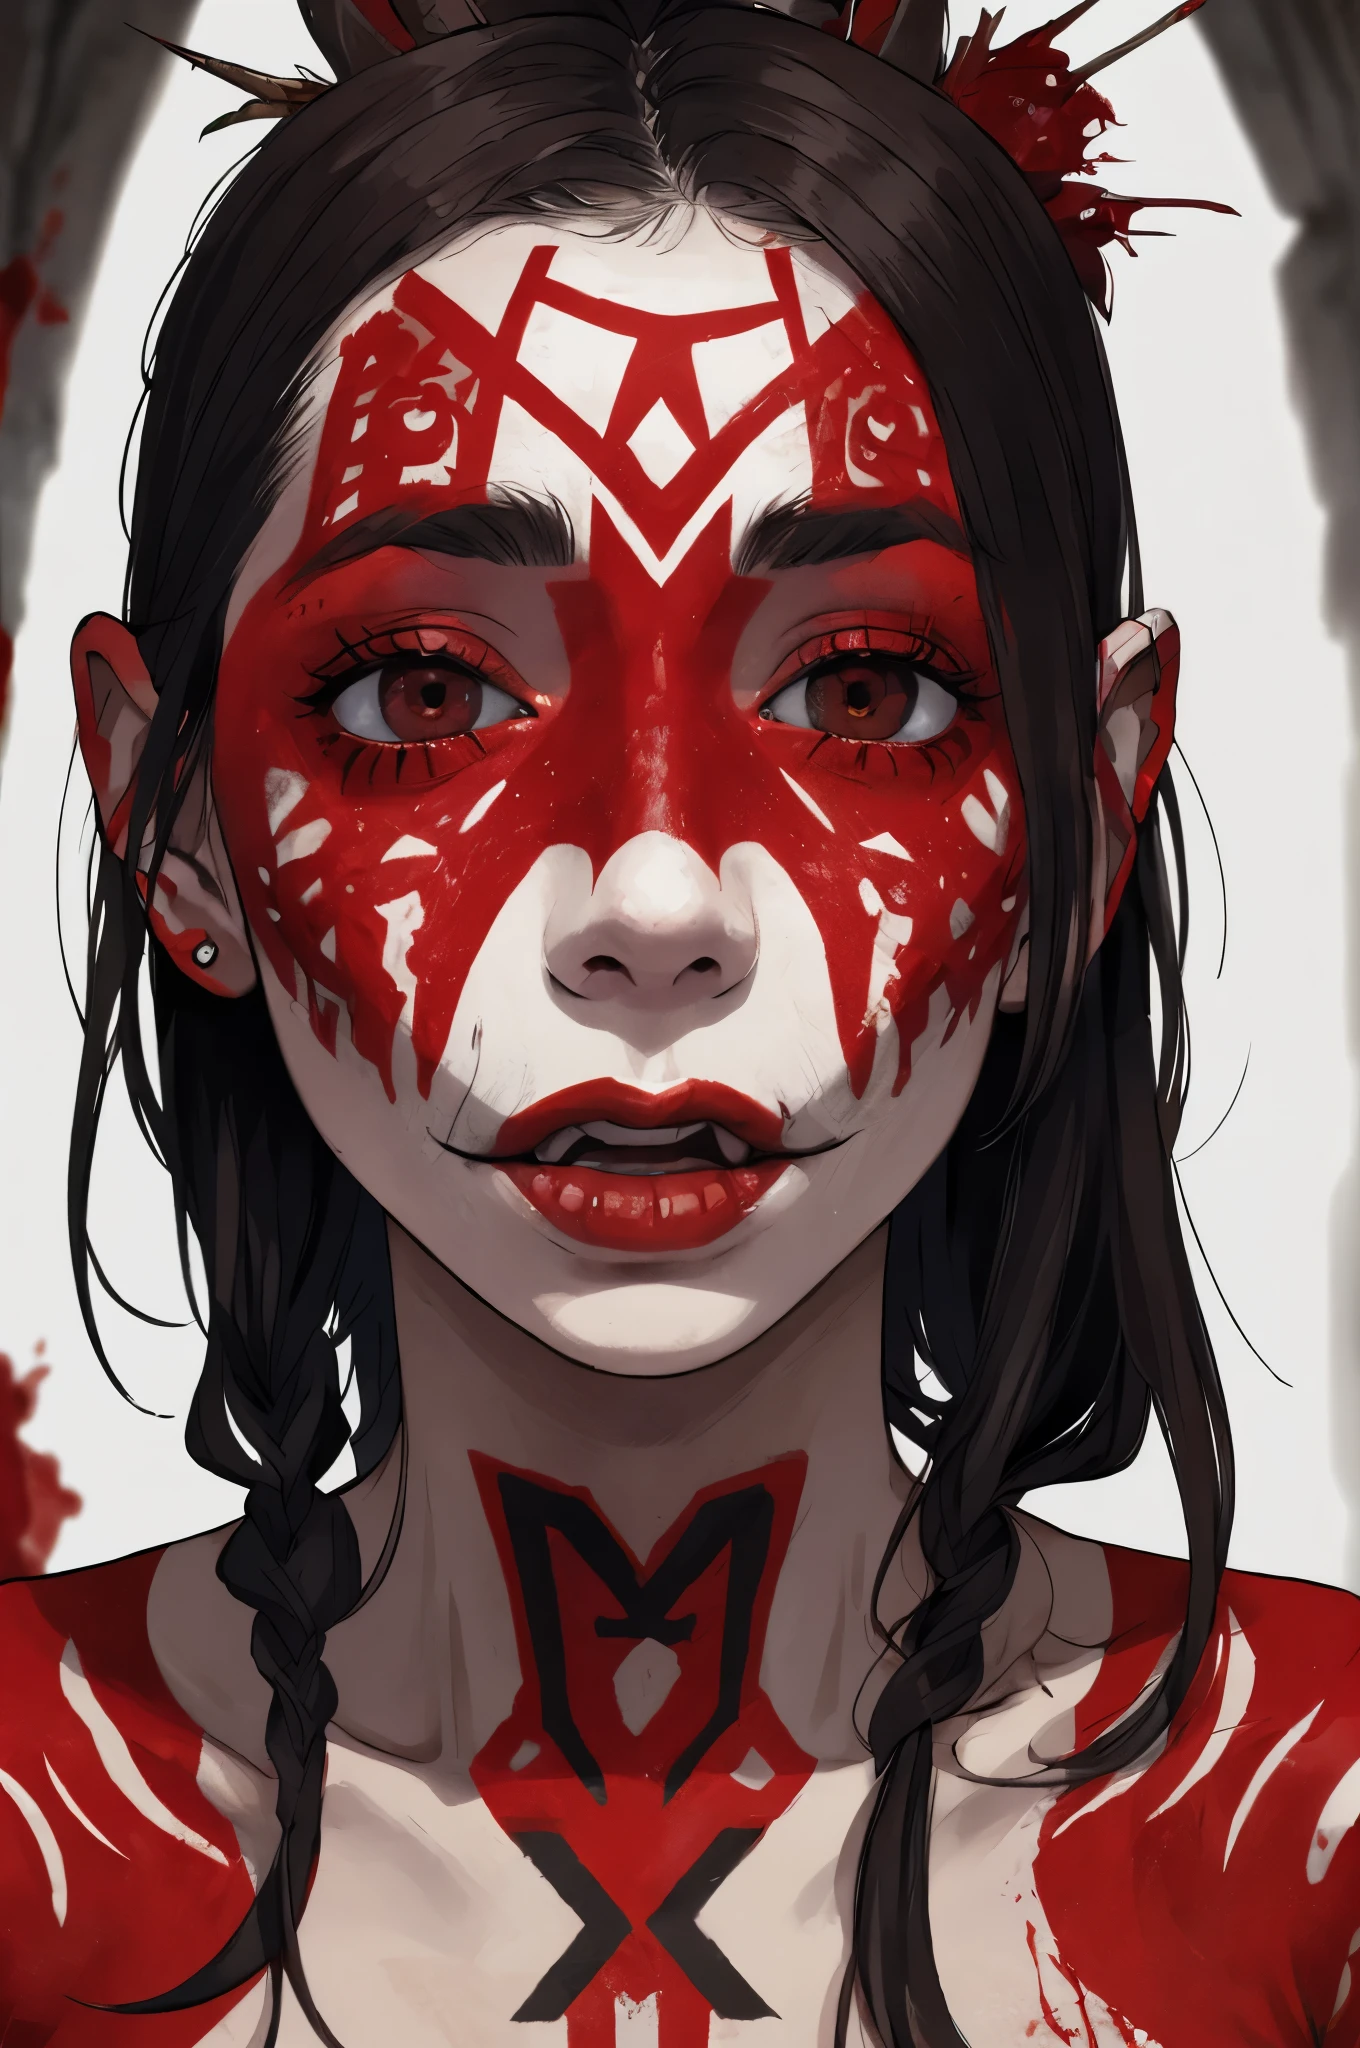 肖像, 性成癮的食人部落女人, 飛鏢舌頭,(許多紅色部落紋身:1.2), (血滴在白皙的臉上:1.2), (血淋淋的臉:1.3), 奇怪的表情